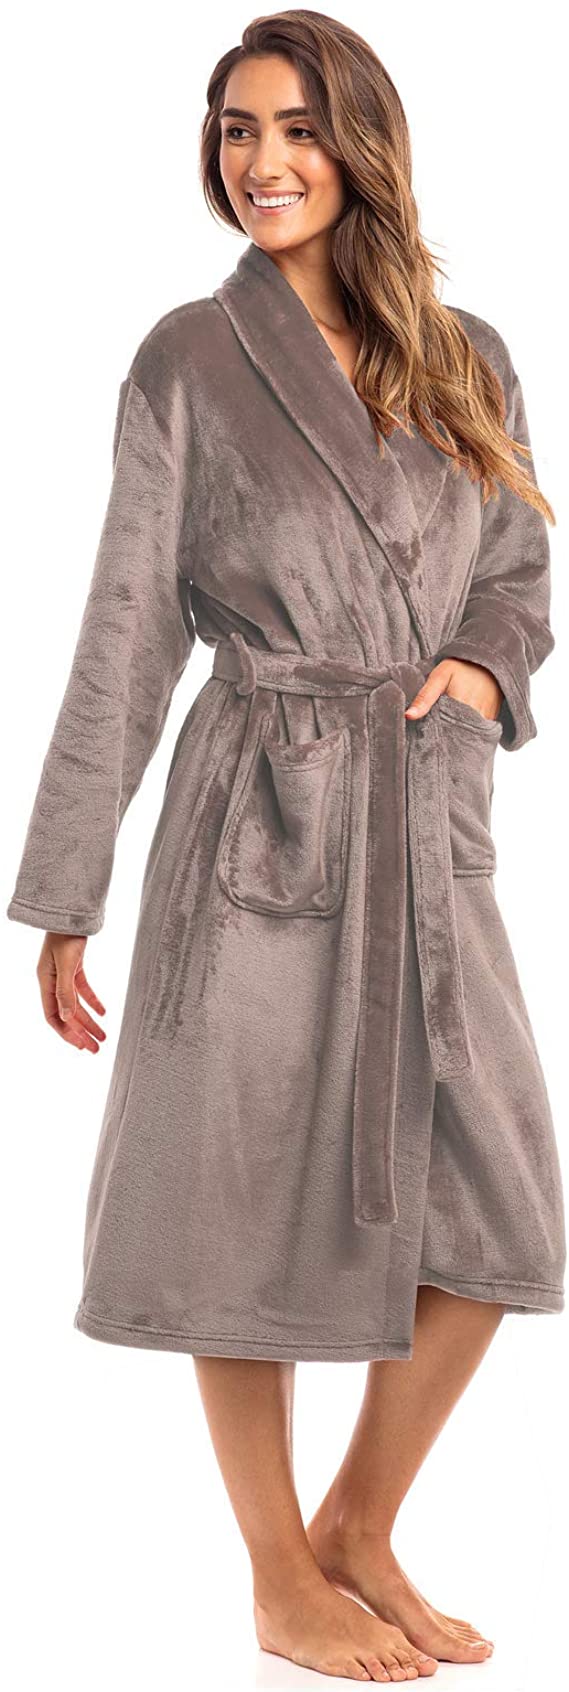 Thread Republic Spa Collection Plush Fleece Robe, Luxurious Warm & Cozy Bathrobe